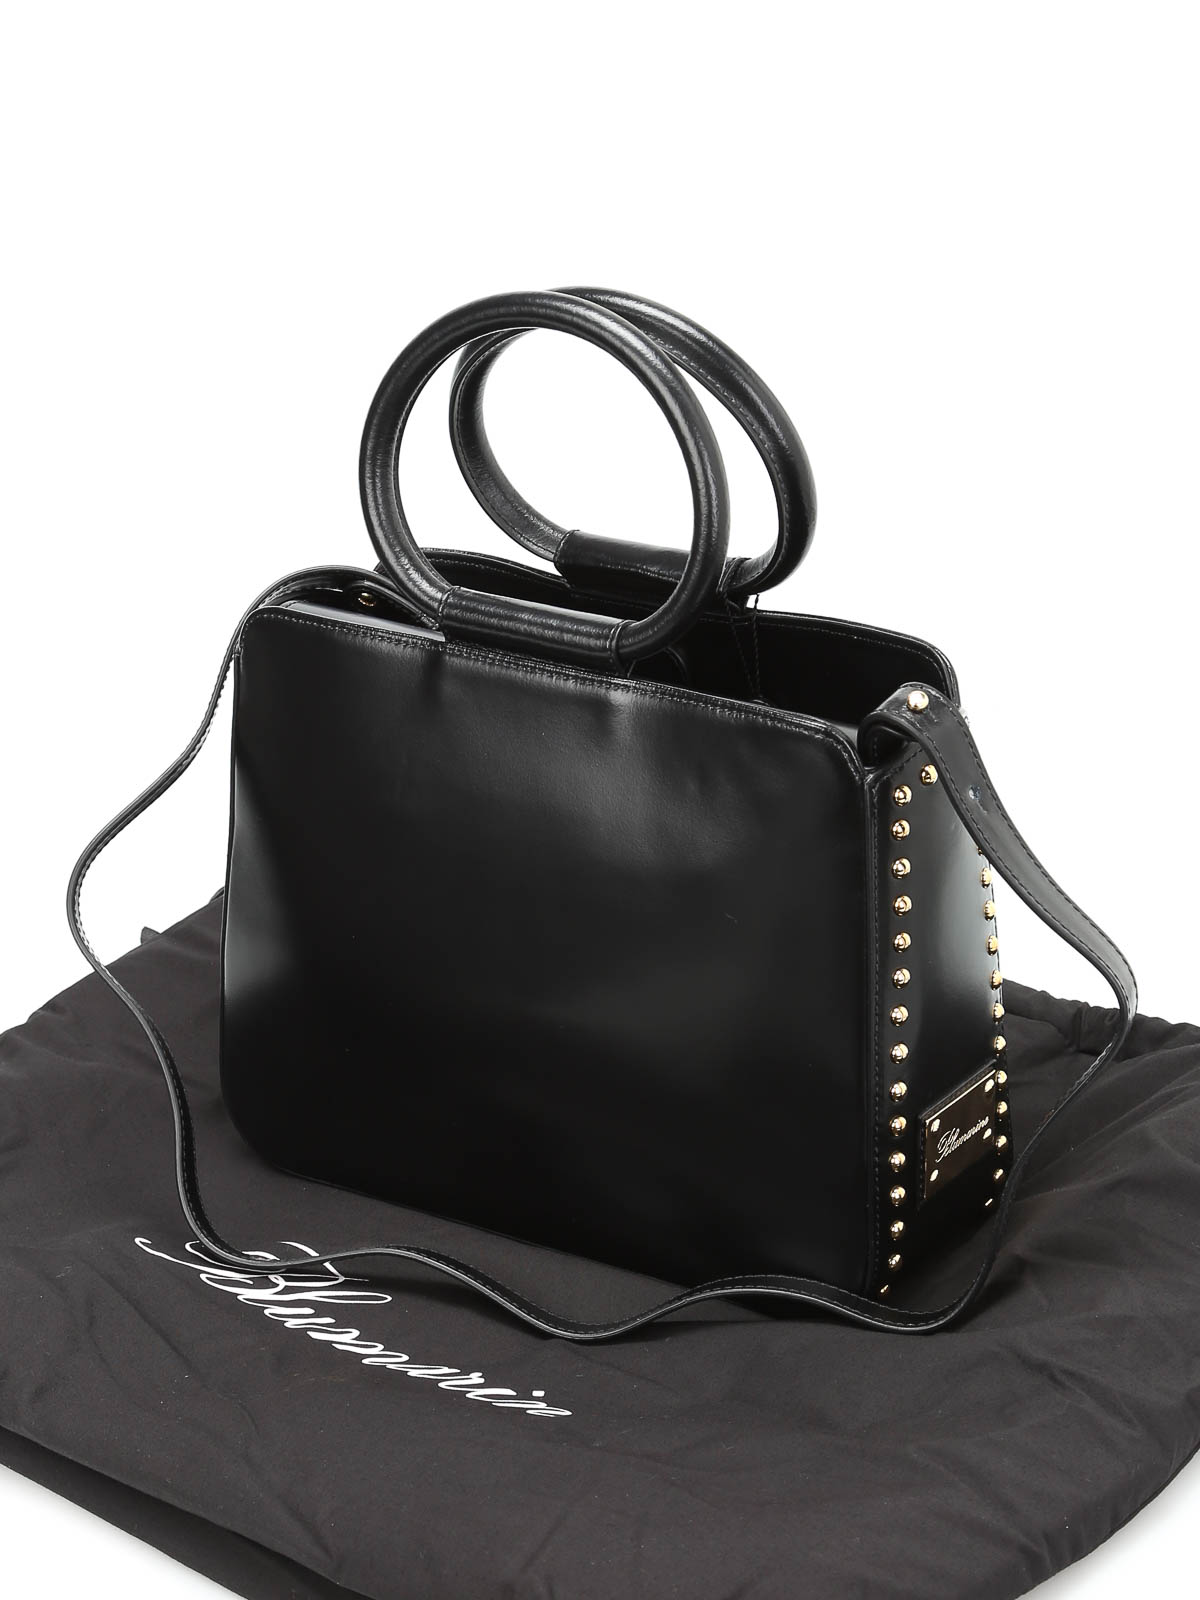 1939AP borsa donna AVENUE 67 ODETTE woman leather bag